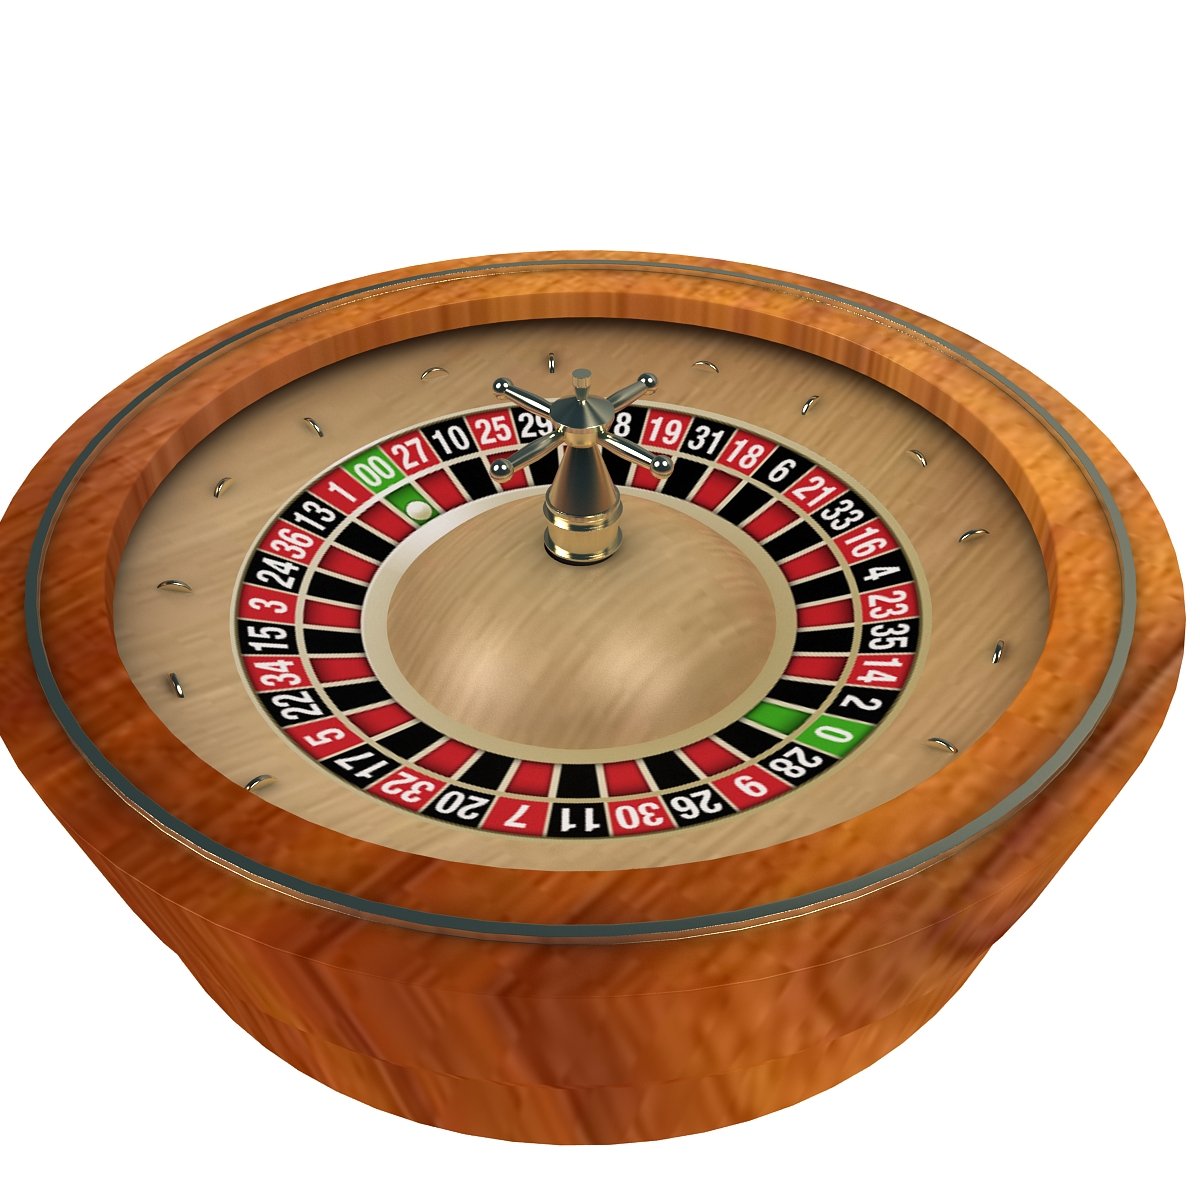 Jogo - 3D Roulette